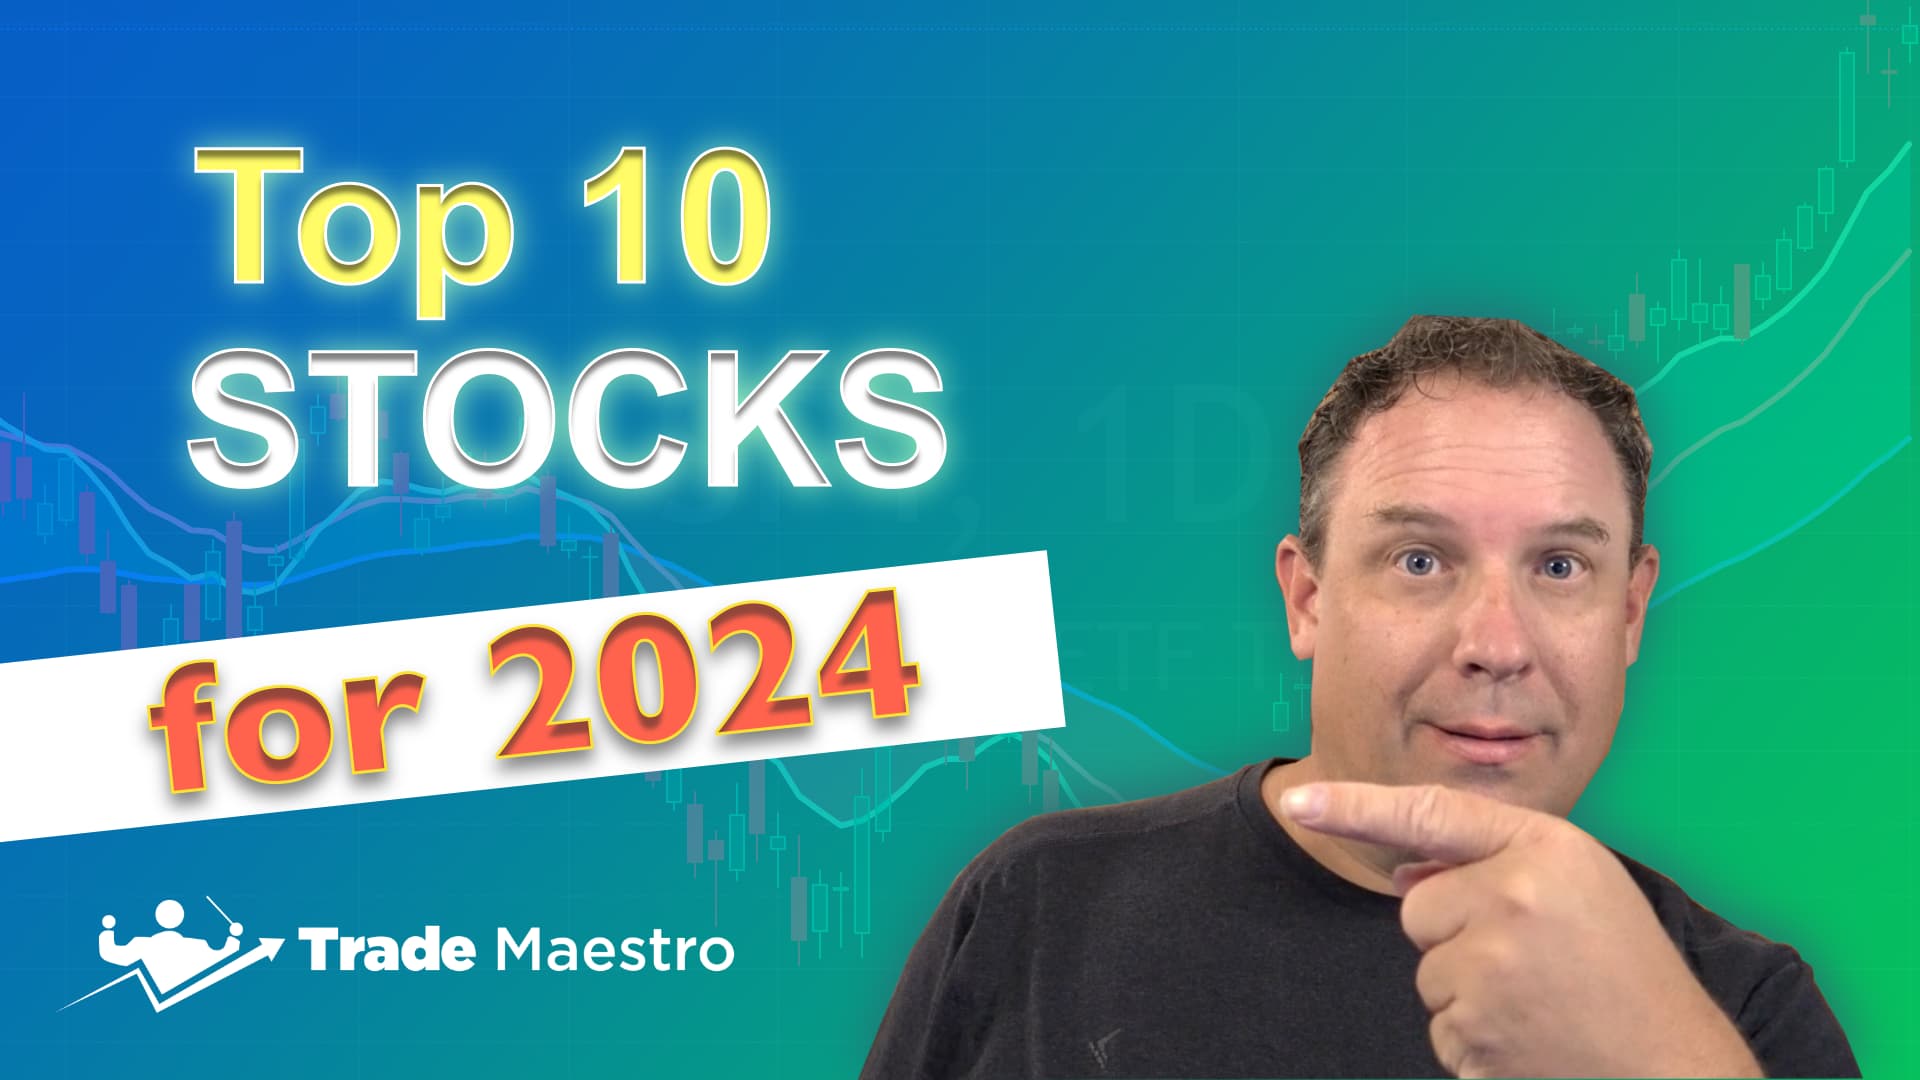 Maestro Top 10 Stocks for 2024 Trade Maestro